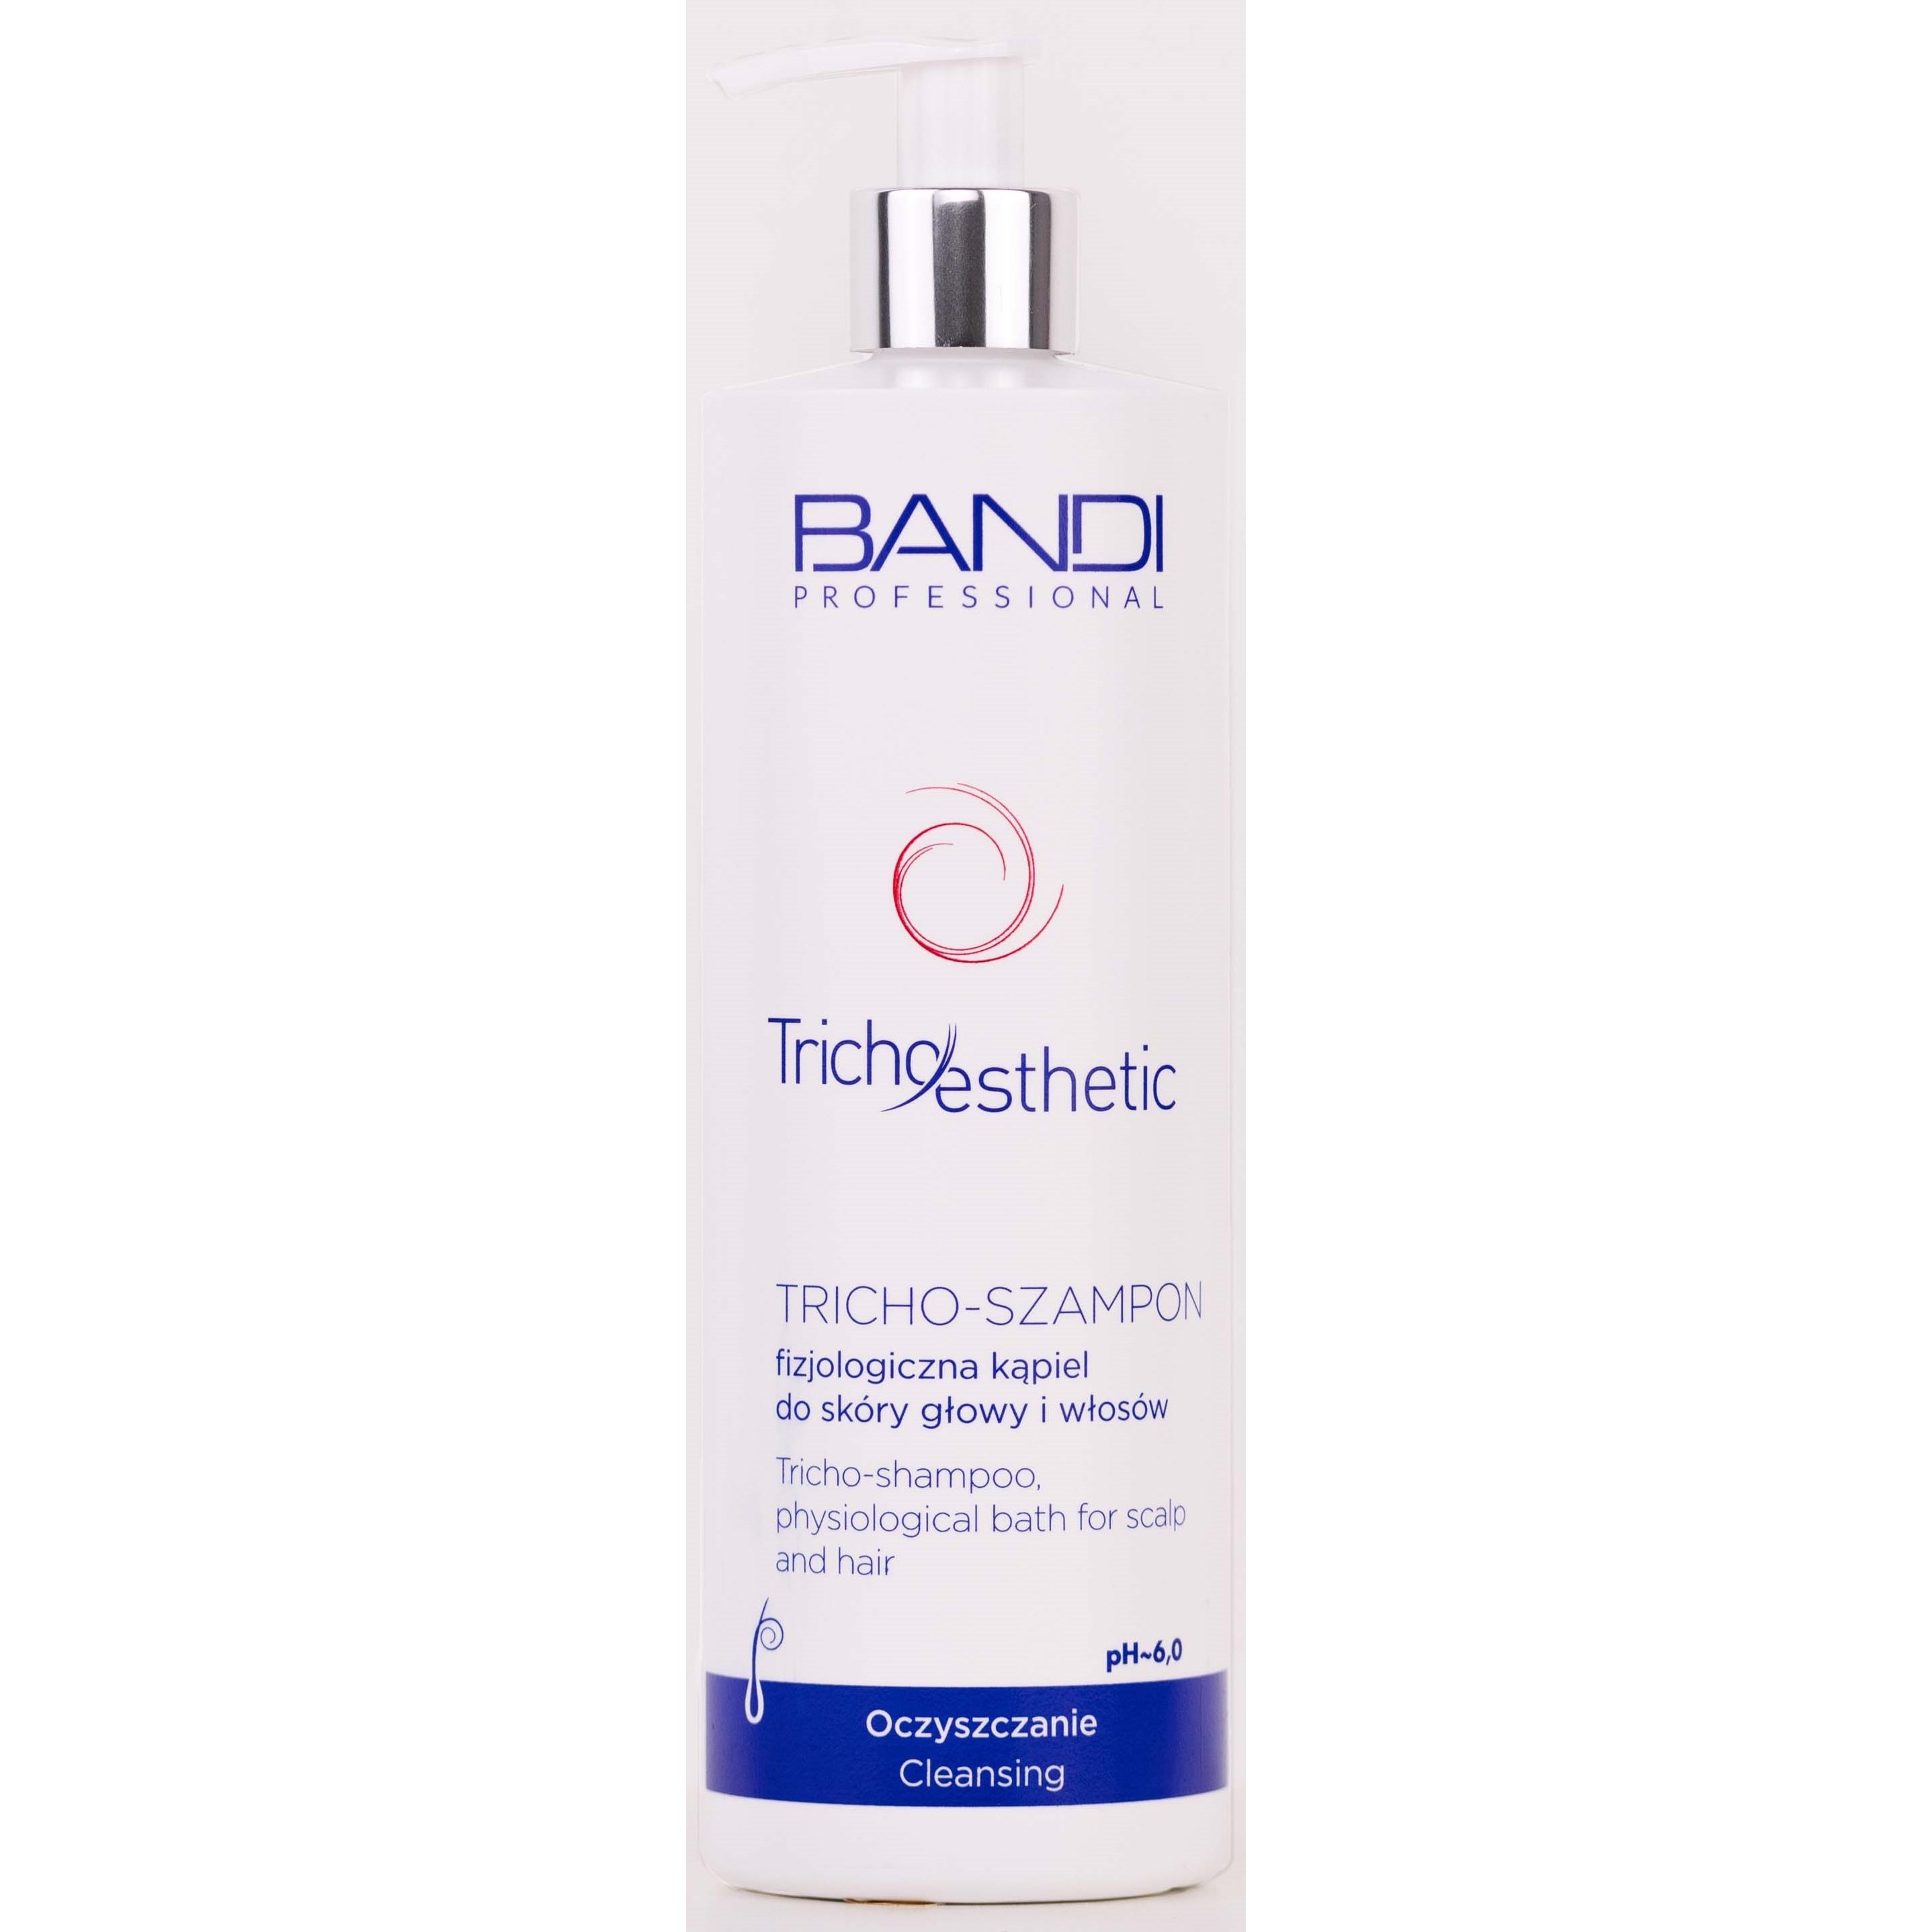 Läs mer om Bandi Tricho-esthetic TRICHO-SHAMPOO physiological bath for scalp and